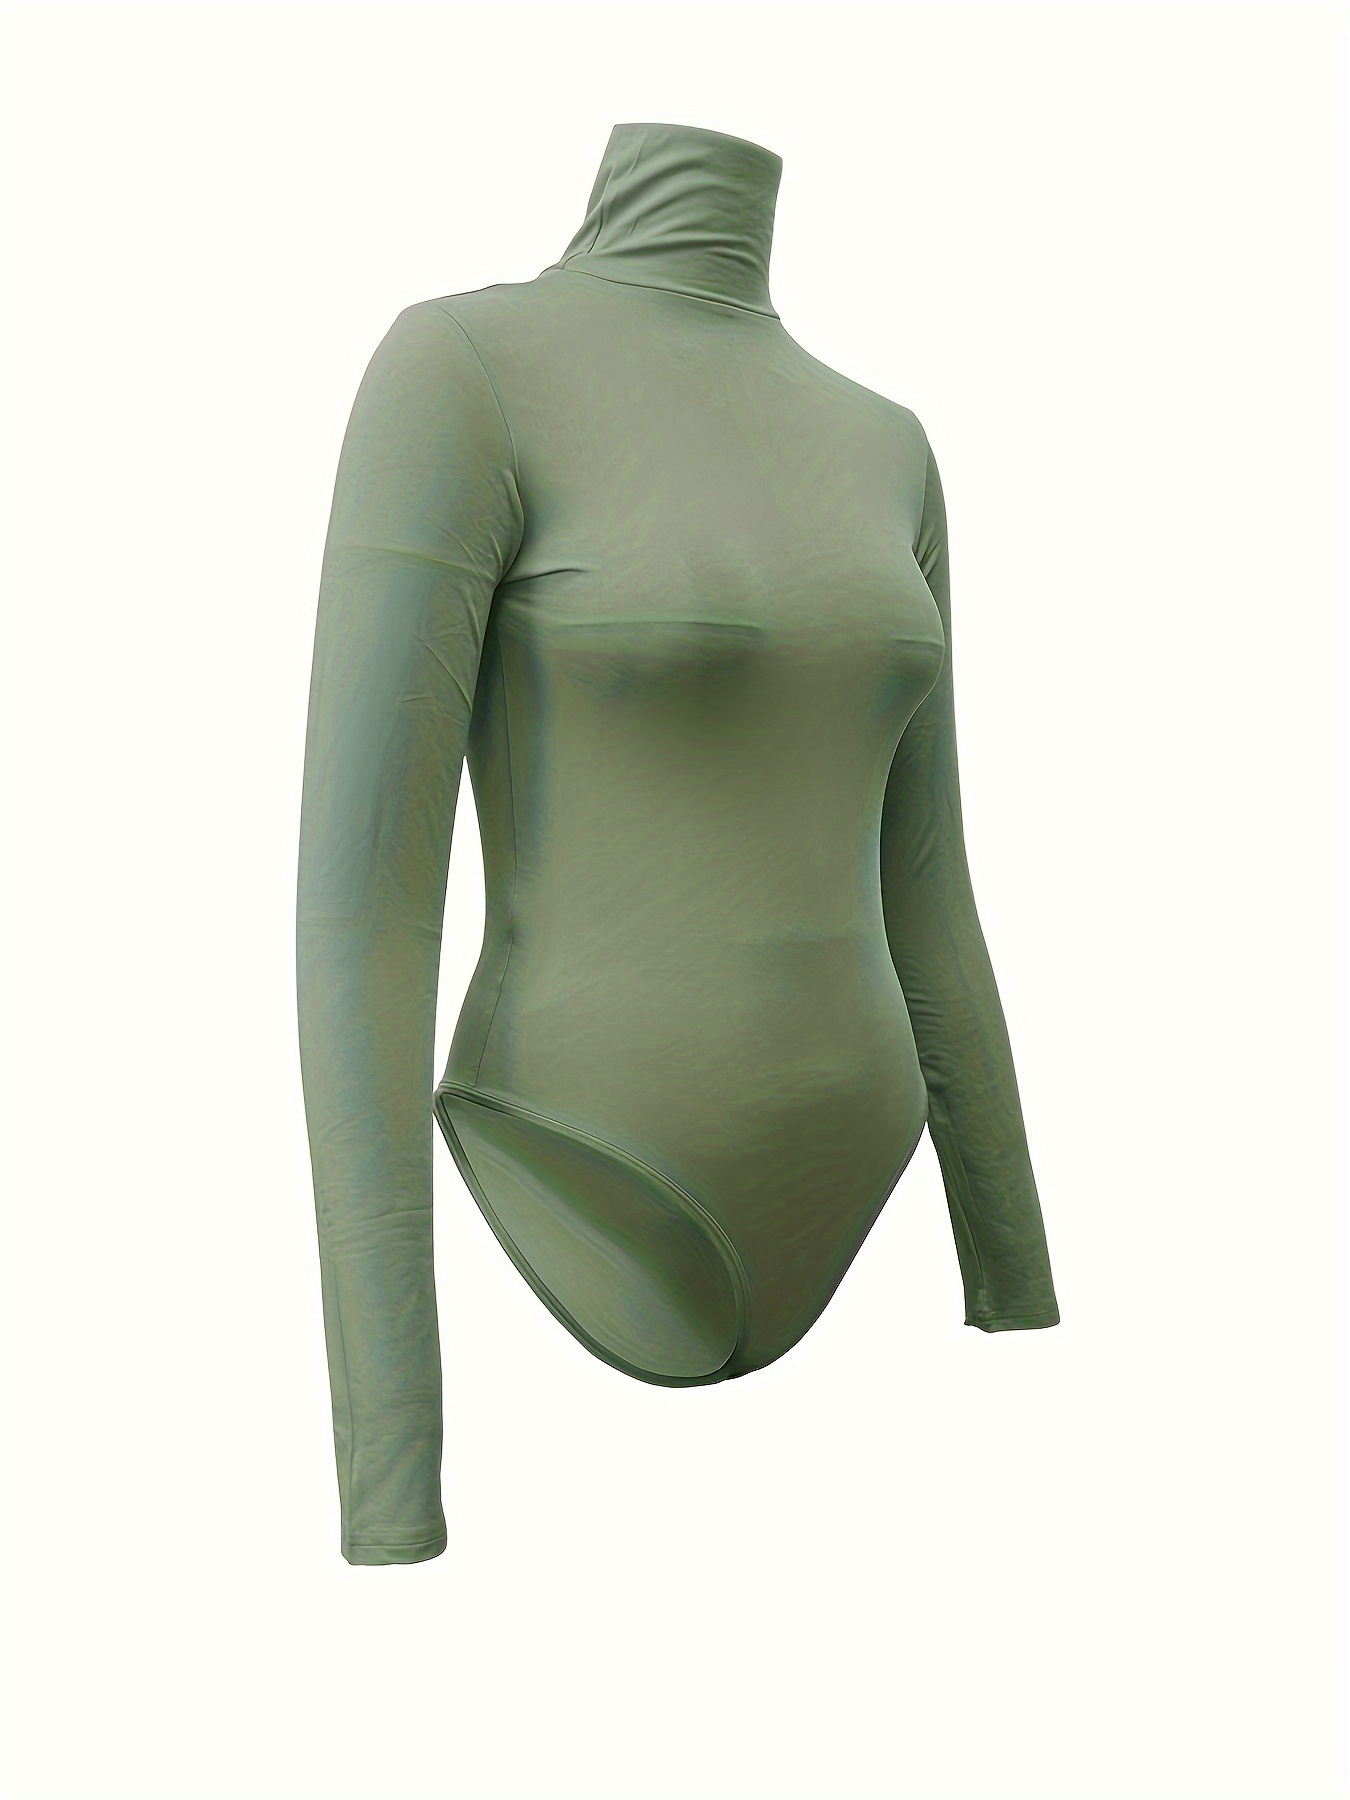 Long Sleeve Bodysuit Women Wool Leotard Turtleneck Stretchy Shapewear body  suit